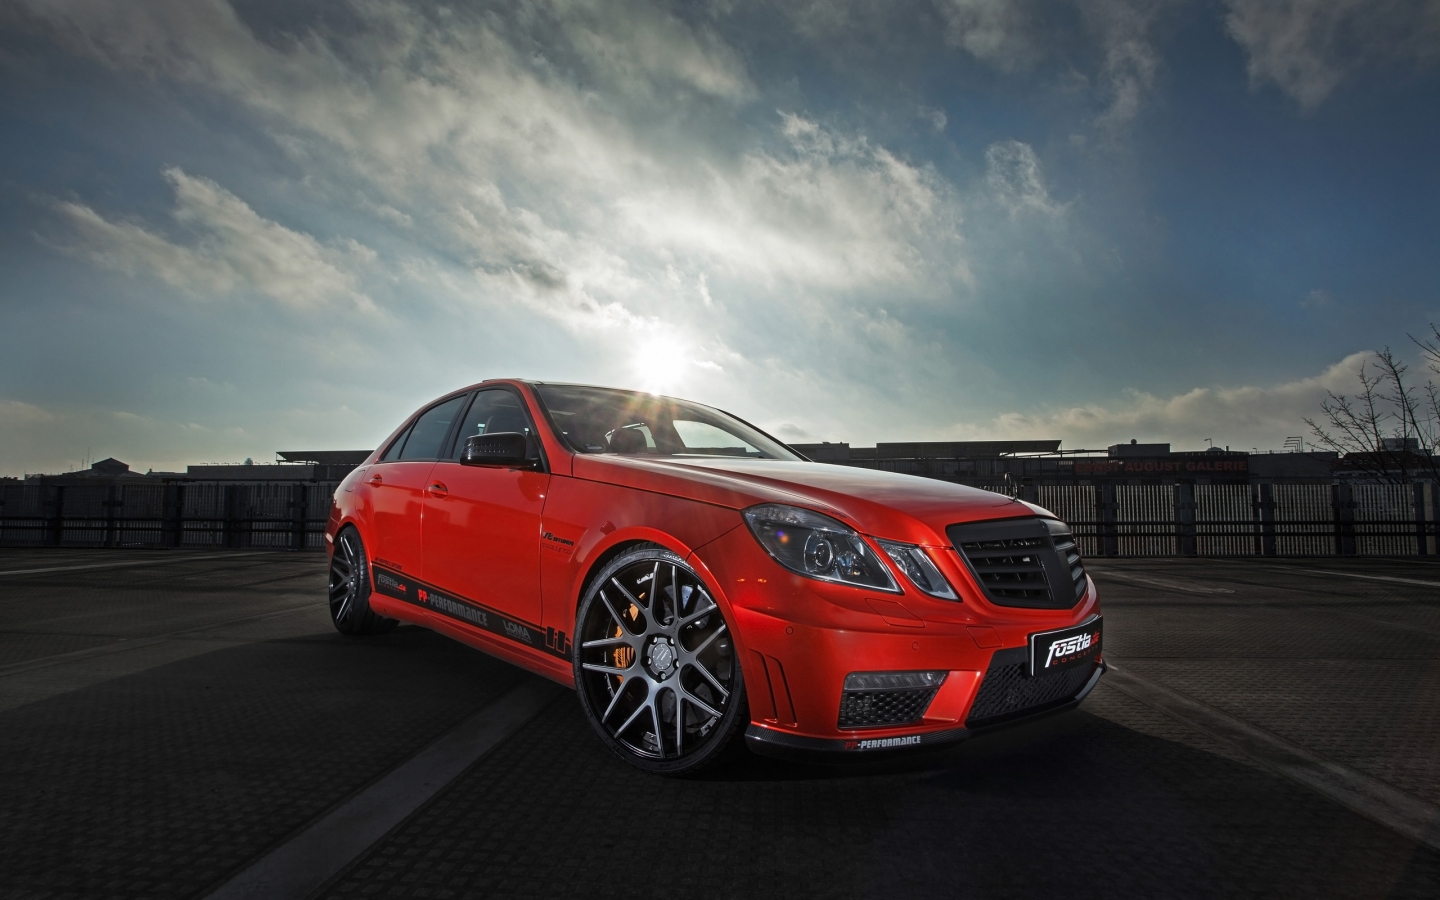 Fostla Mercedes-Benz E63 AMG for 1440 x 900 widescreen resolution